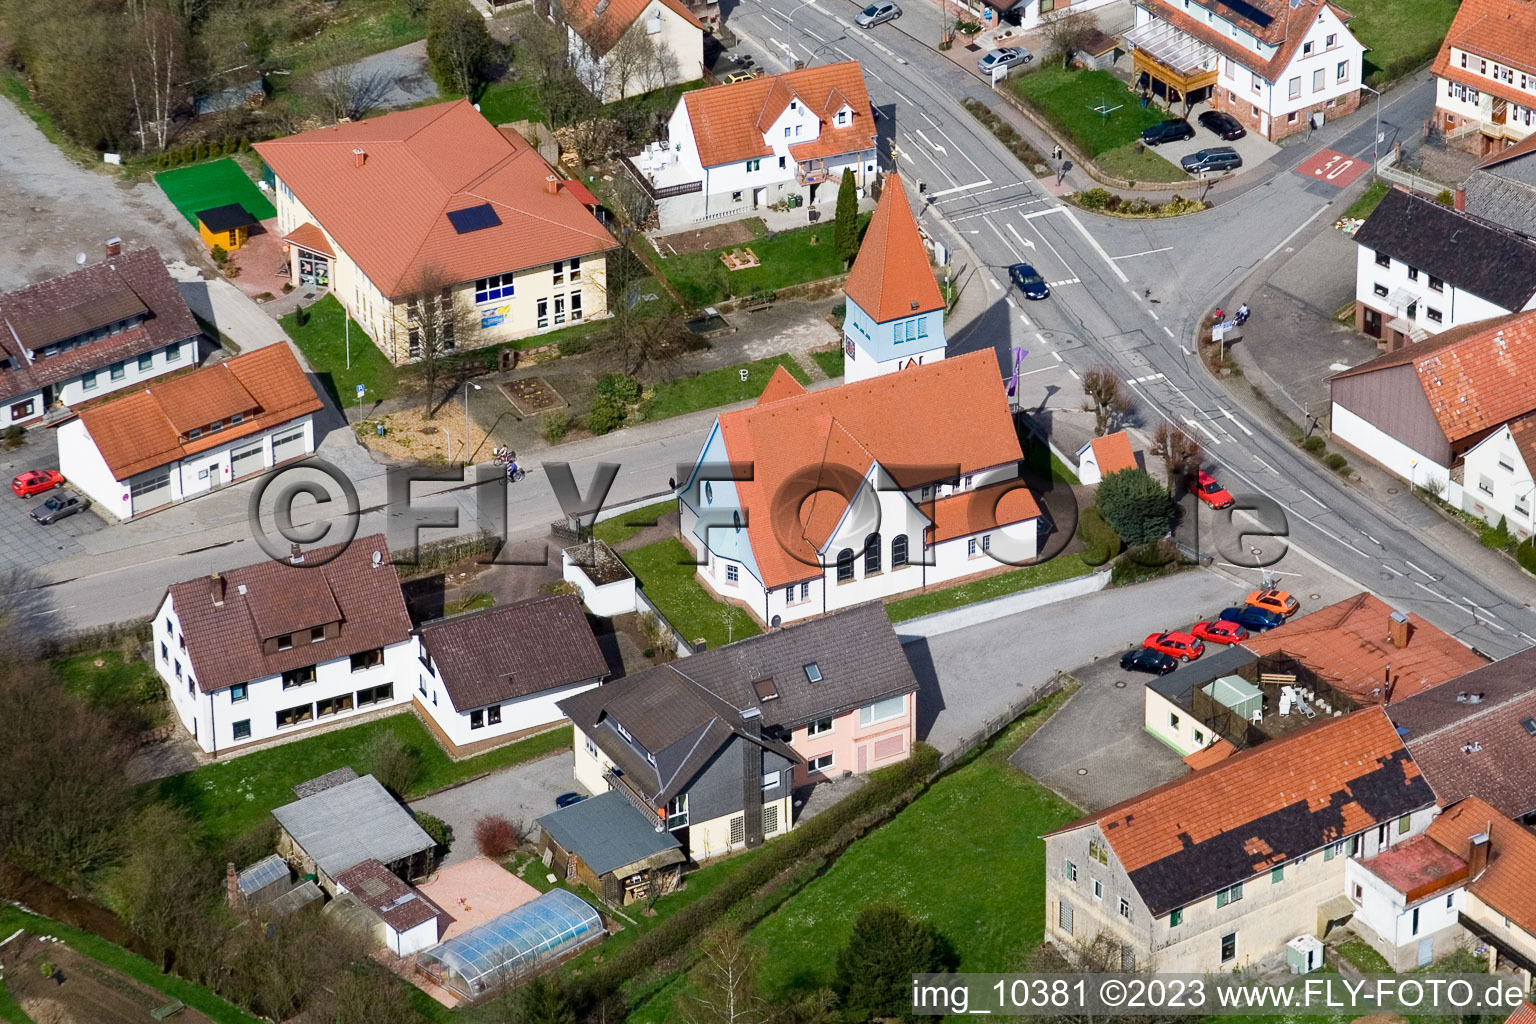 Affolterbach im Bundesland Hessen, Deutschland von der Drohne aus gesehen